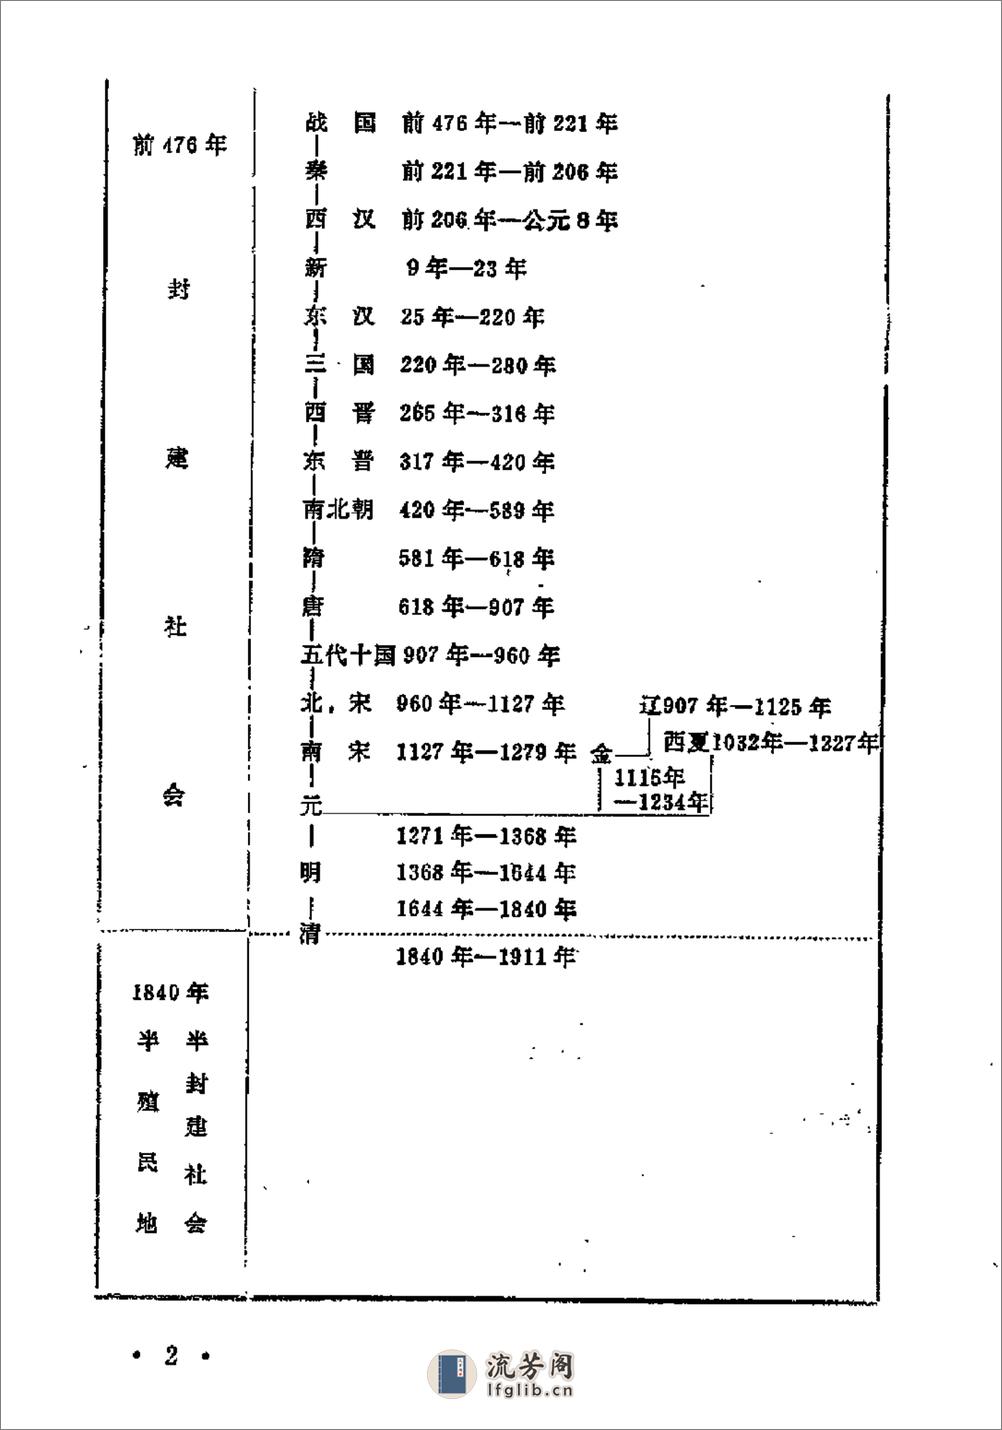 中国历史纪年简表·陈作良·中央党校1985 - 第15页预览图